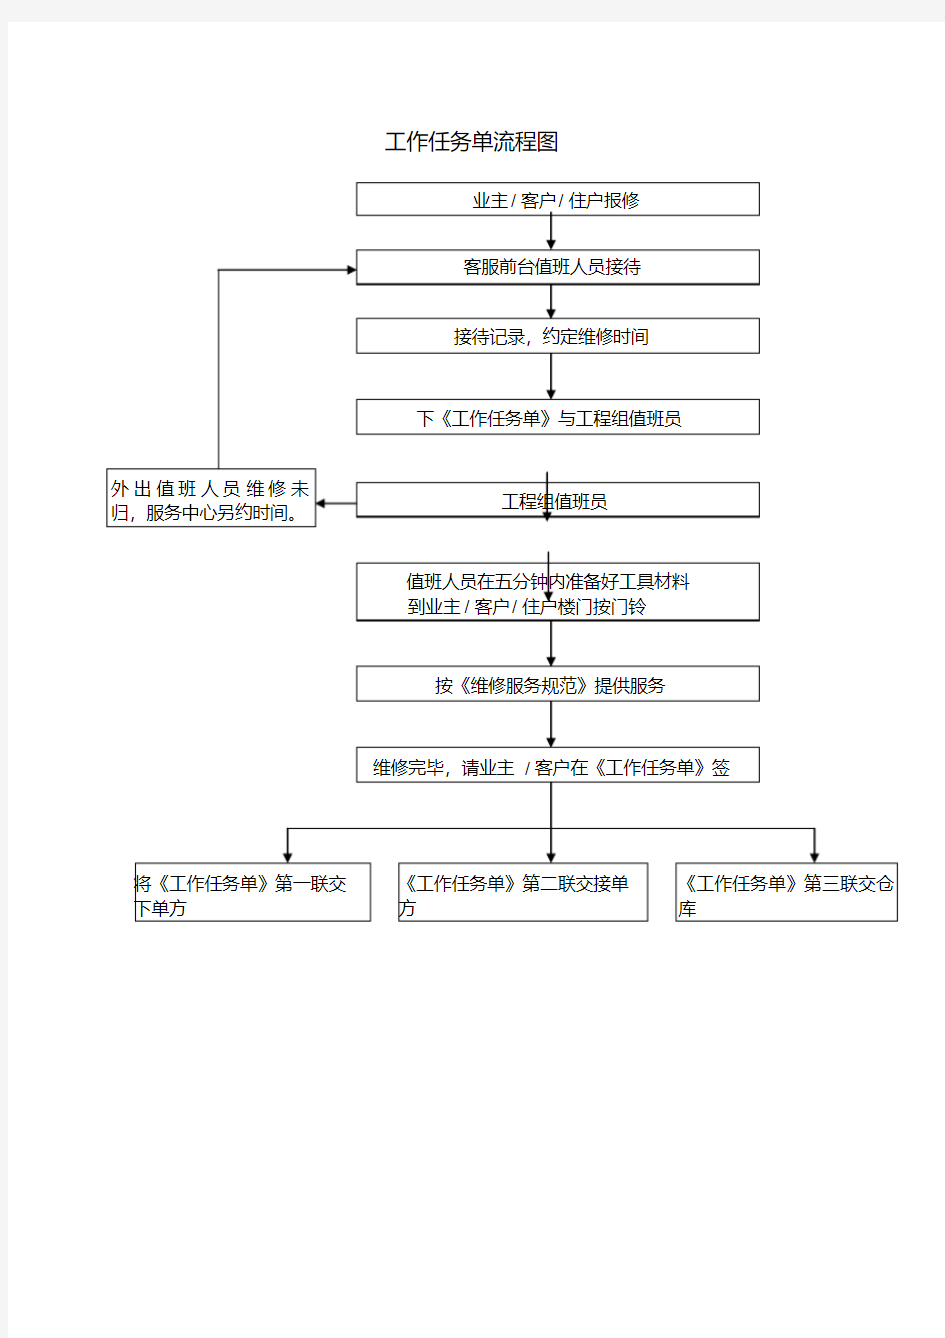 工作任务单流程图.pdf